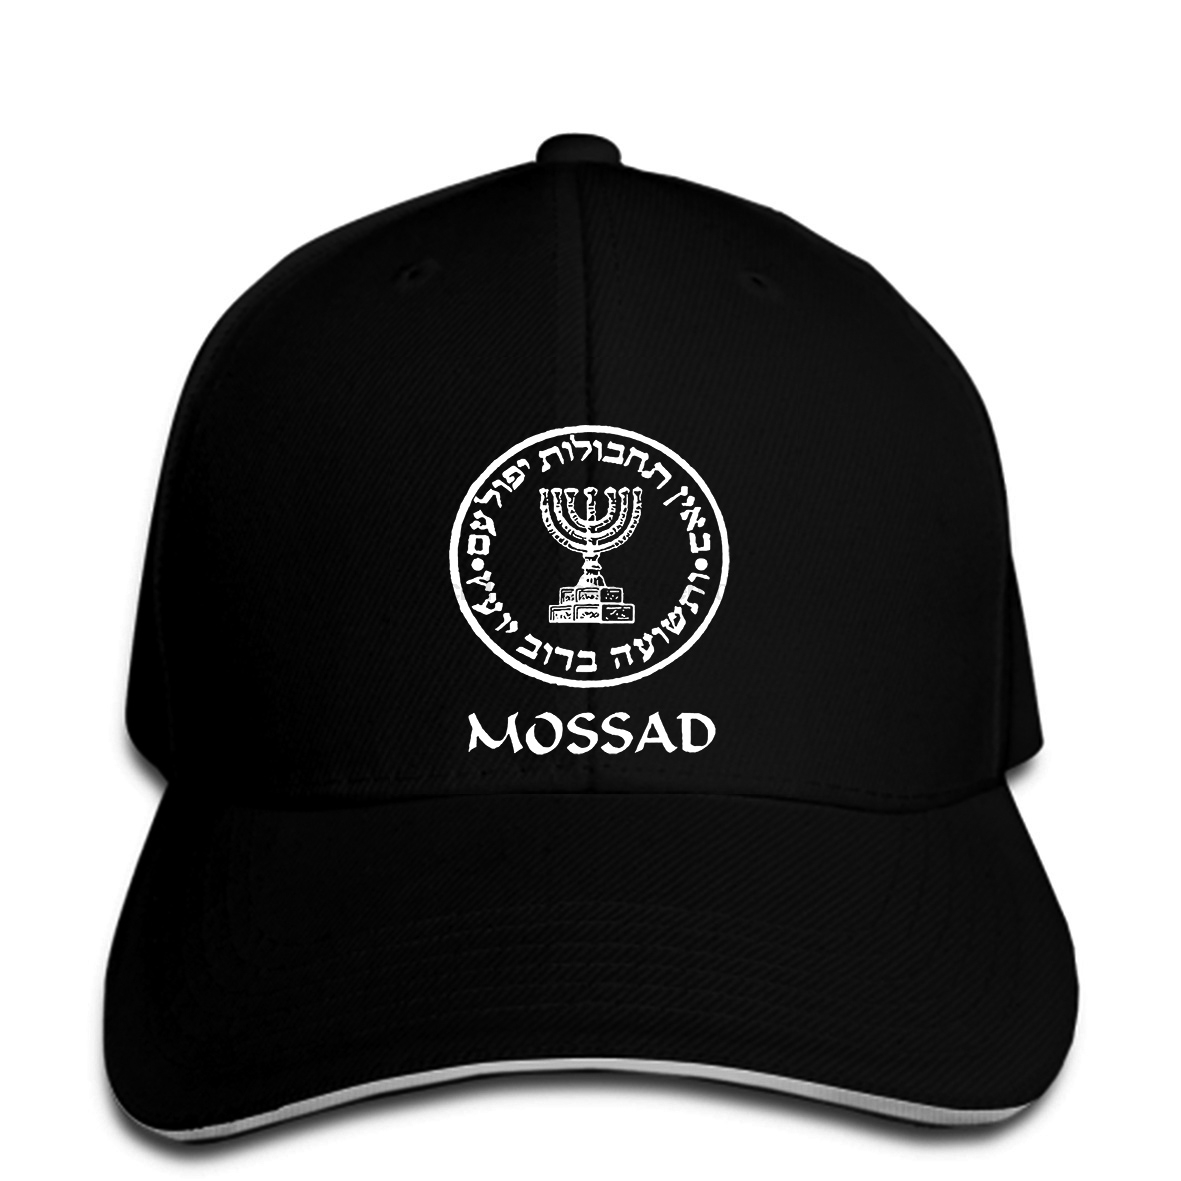 Baseball Cap Israel Army Mossad (Israeli CIA) IDF Israeli black graphic Snapback hat peaked